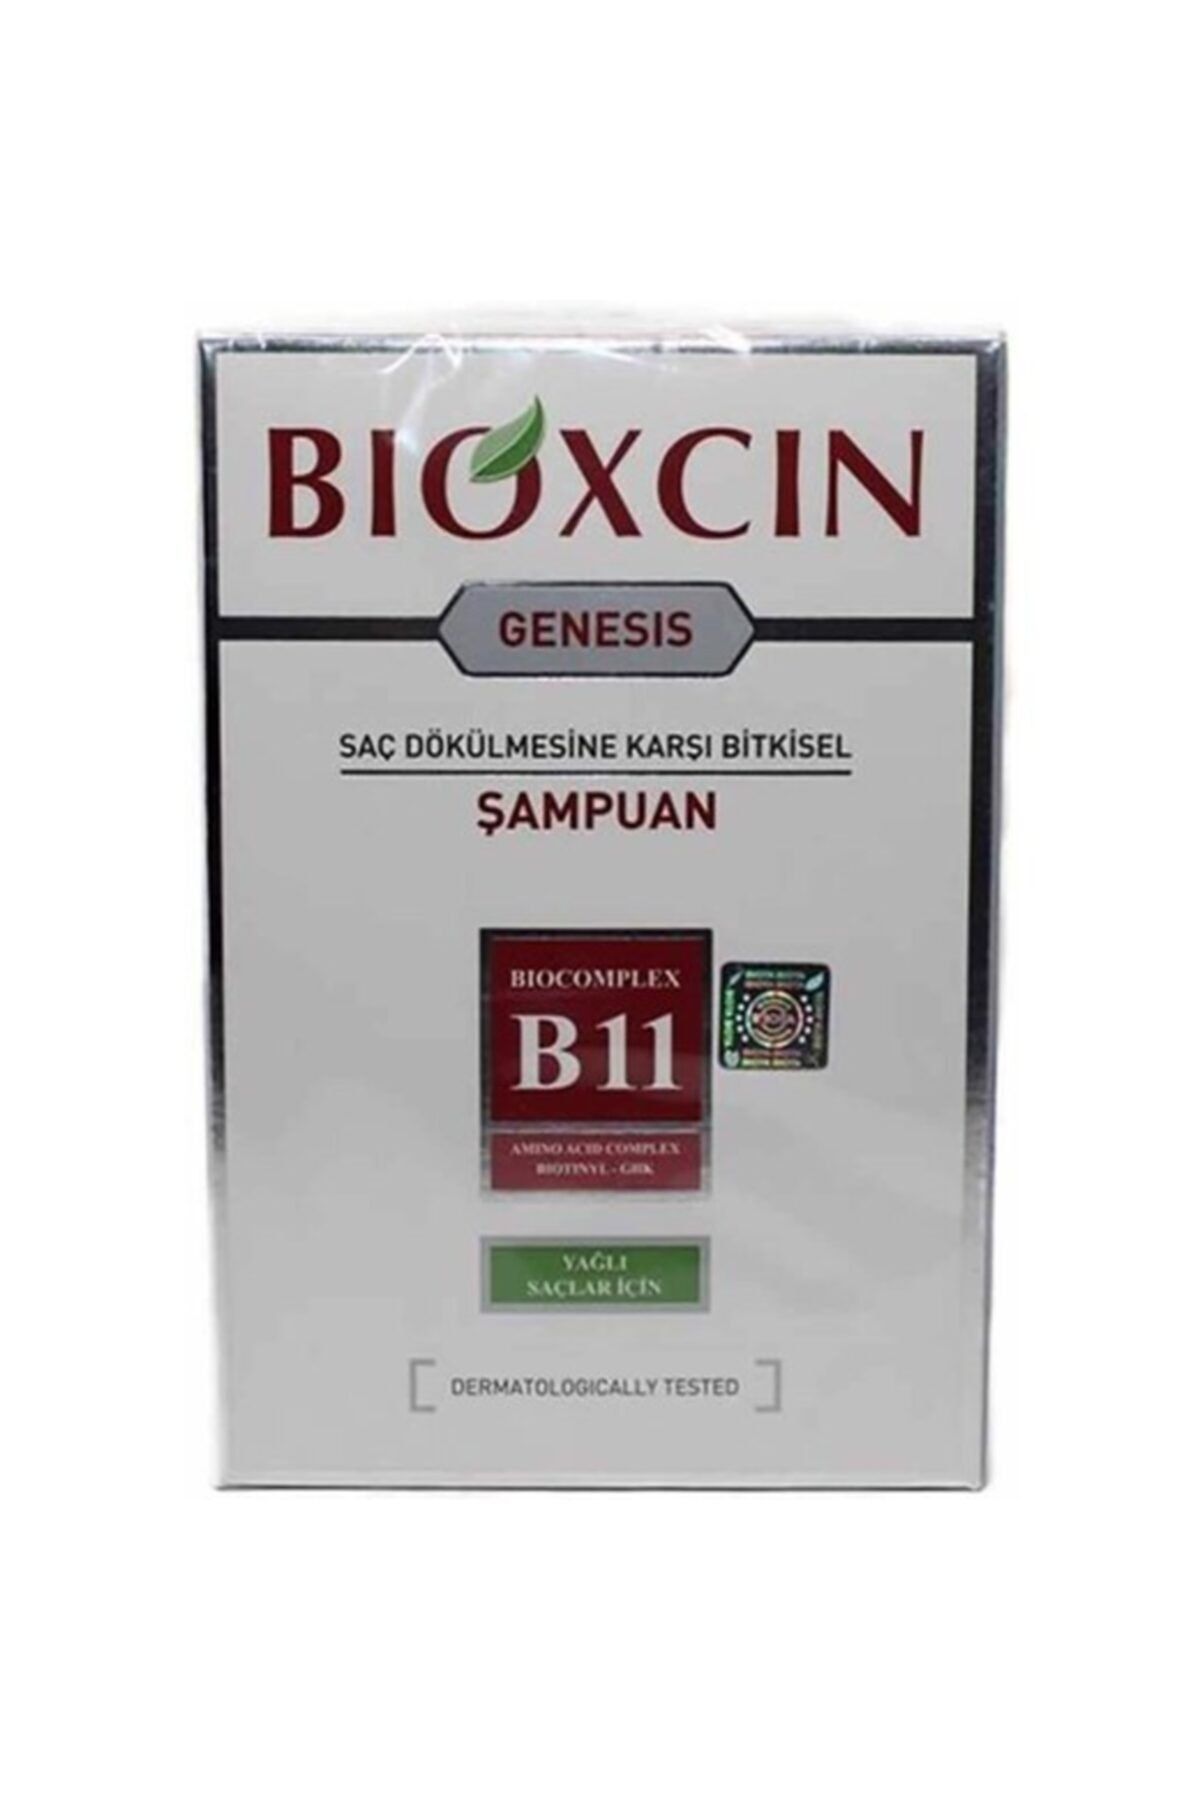 Bioxcin Genesis Yağlı Saçlar Için Bitkisel Şampuan 300 ml